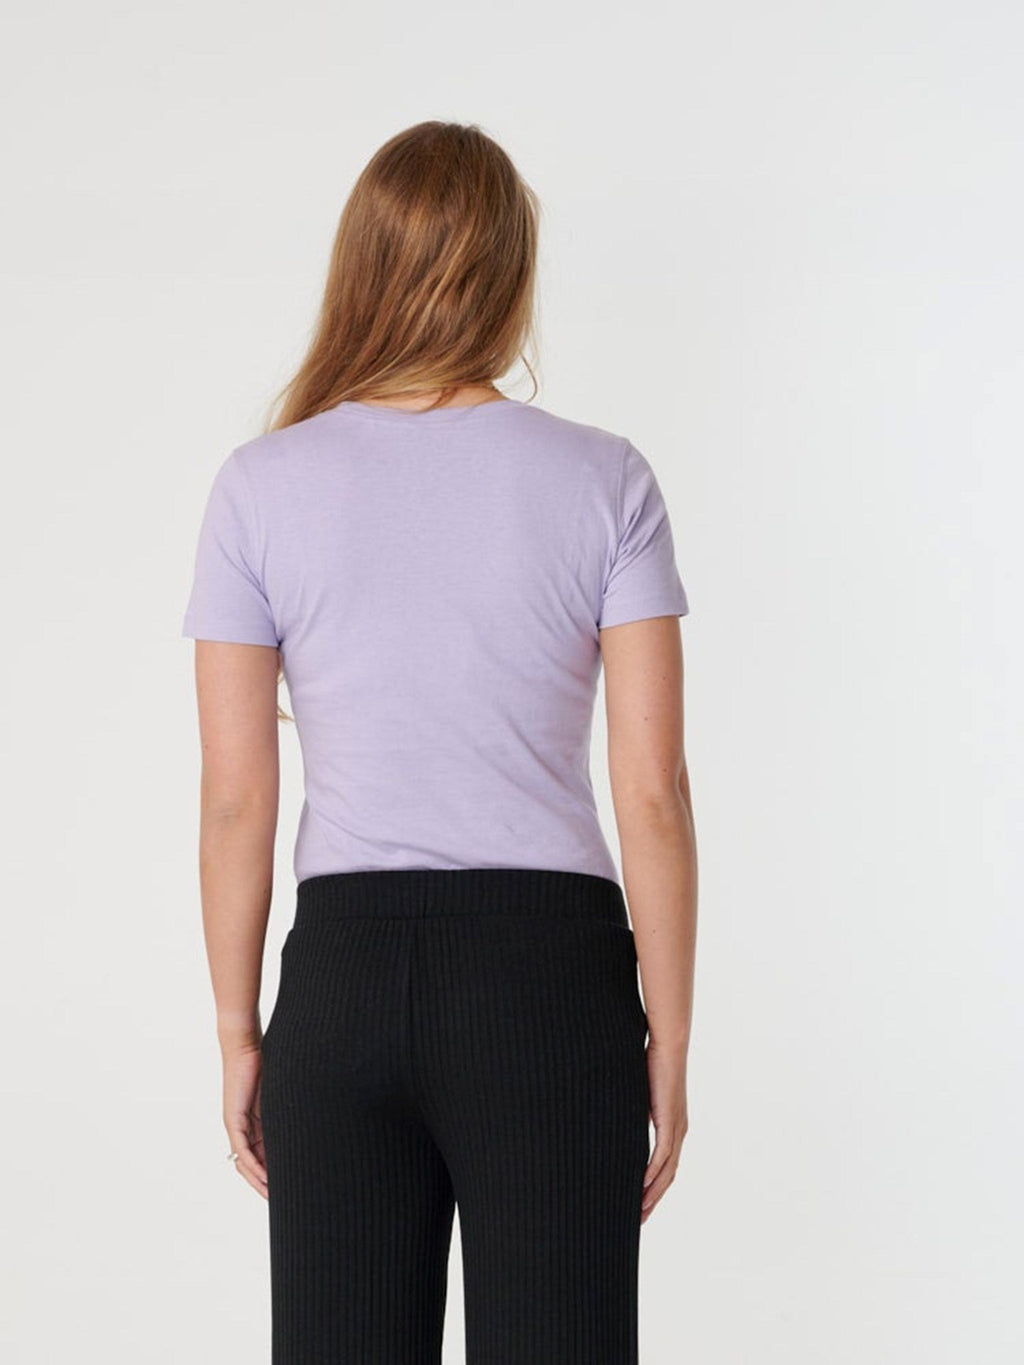 Eingebautes T -Shirt - Lavendel